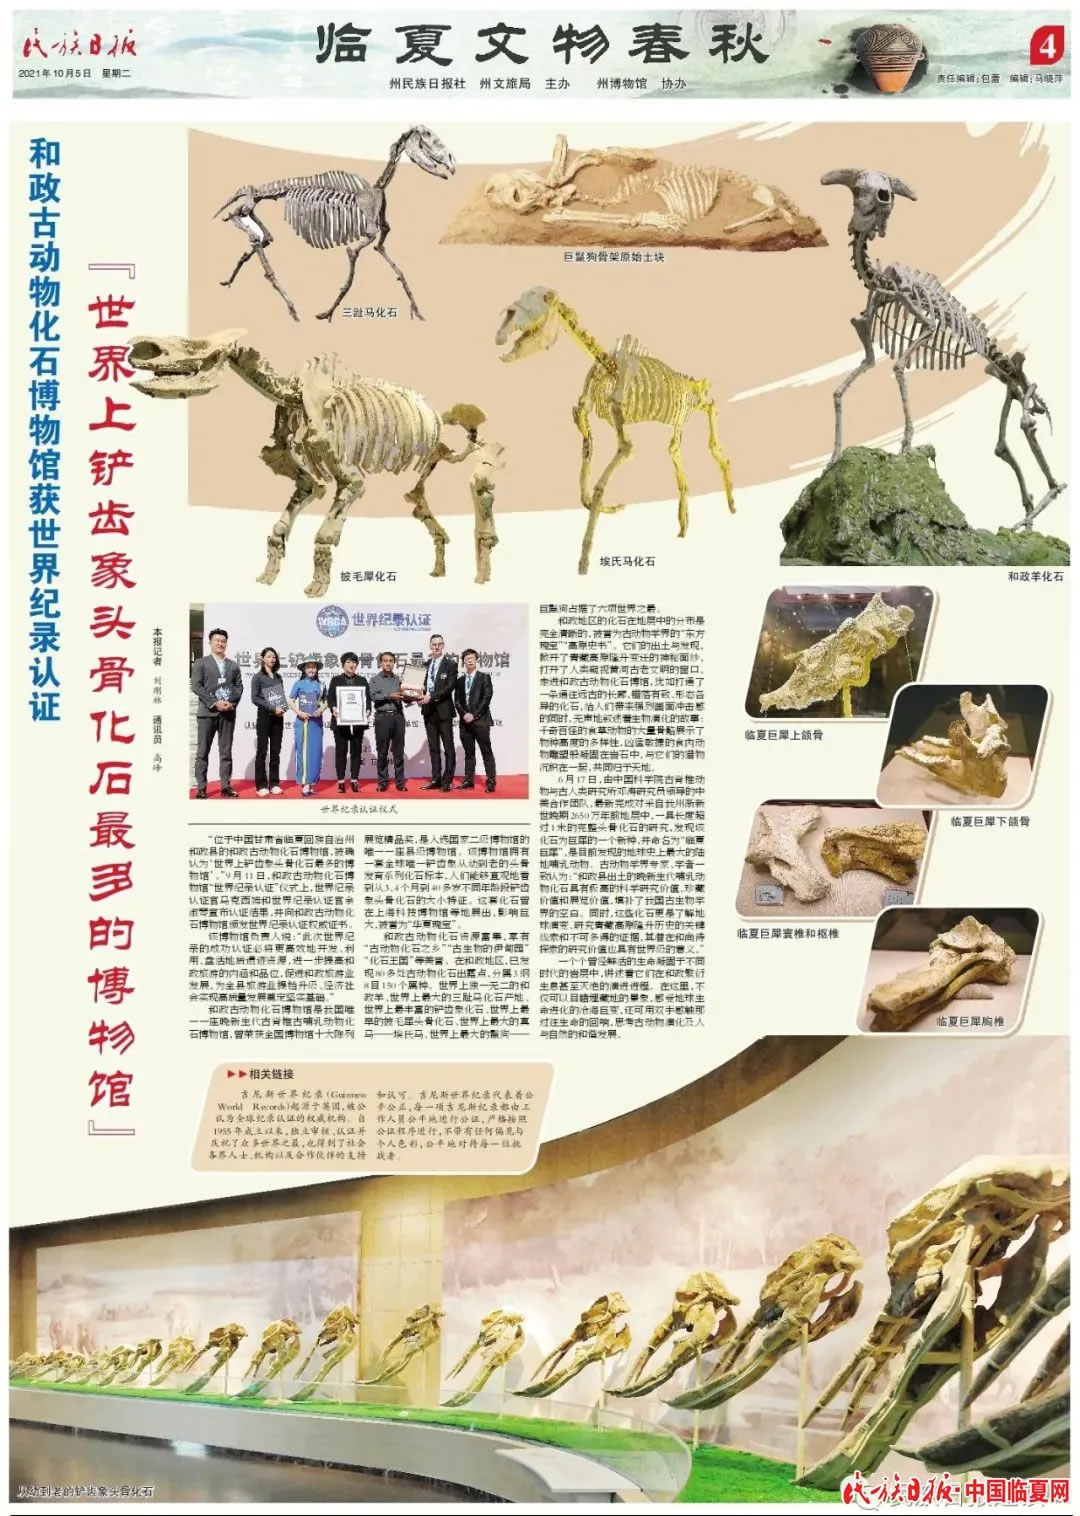 甘肃和政古动物化石博物馆获世界纪录认证“世界上铲齿象头骨化石最多的博物馆”